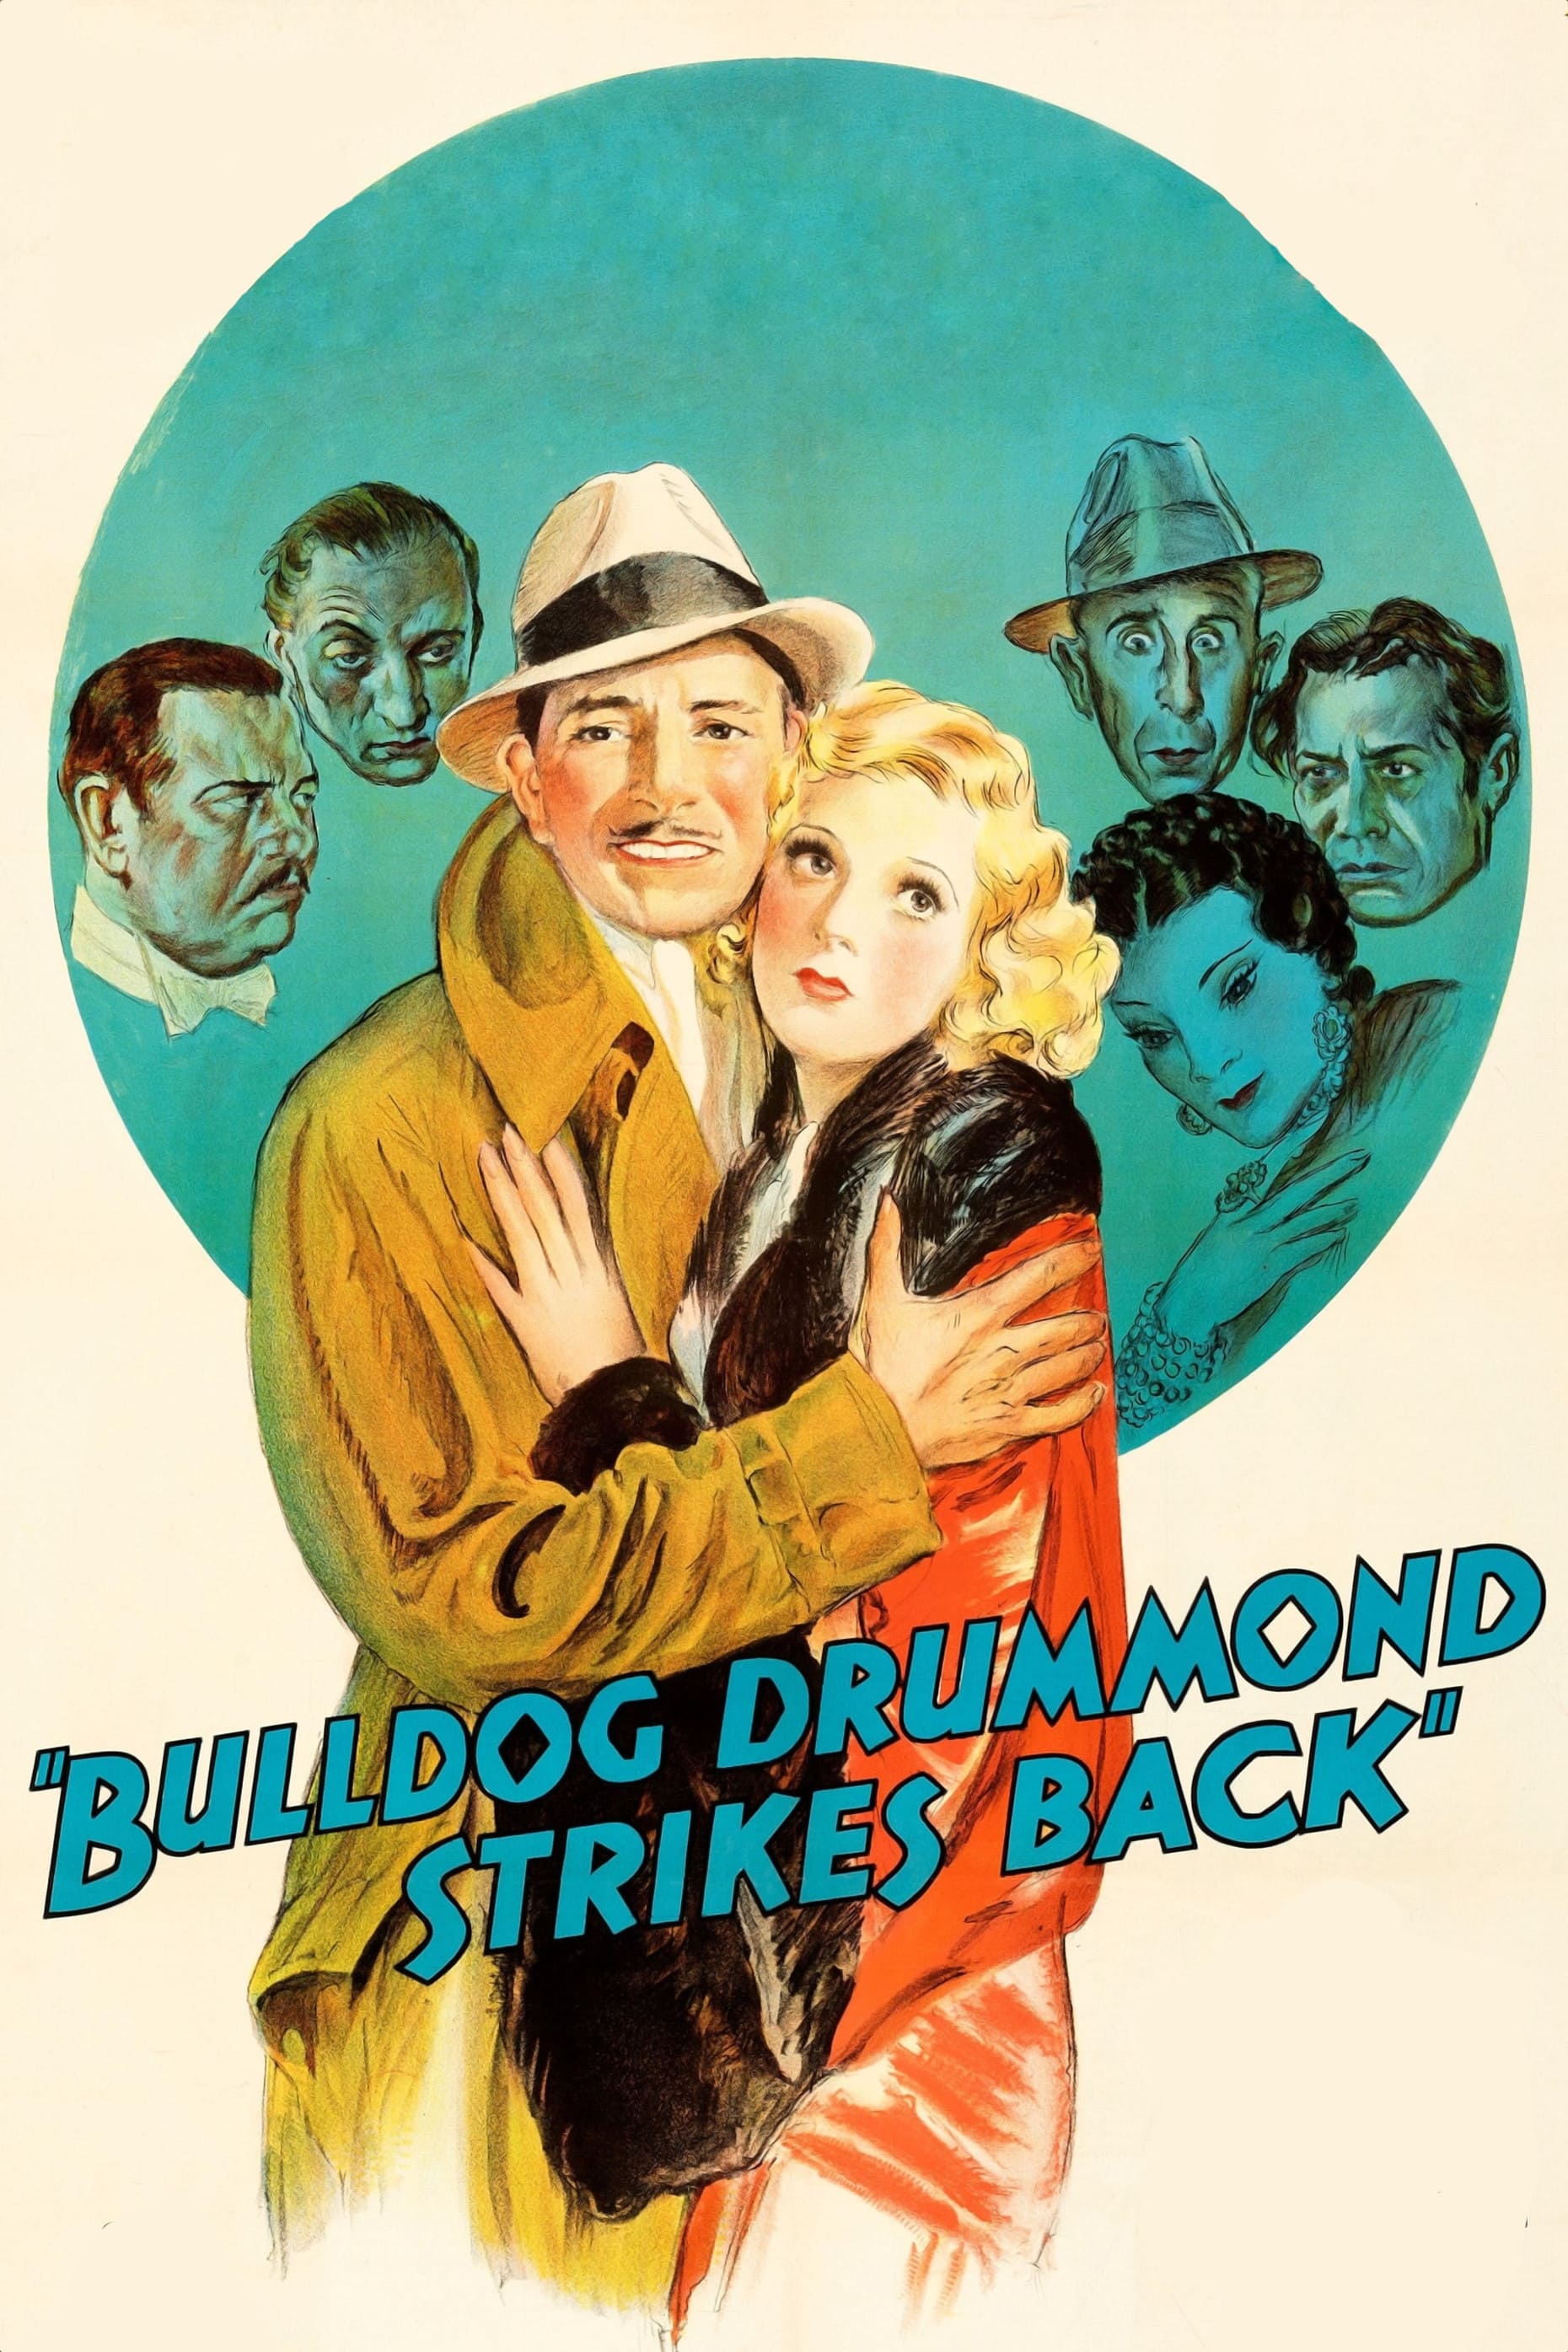 Bulldog Drummond schlägt zurück (1934)